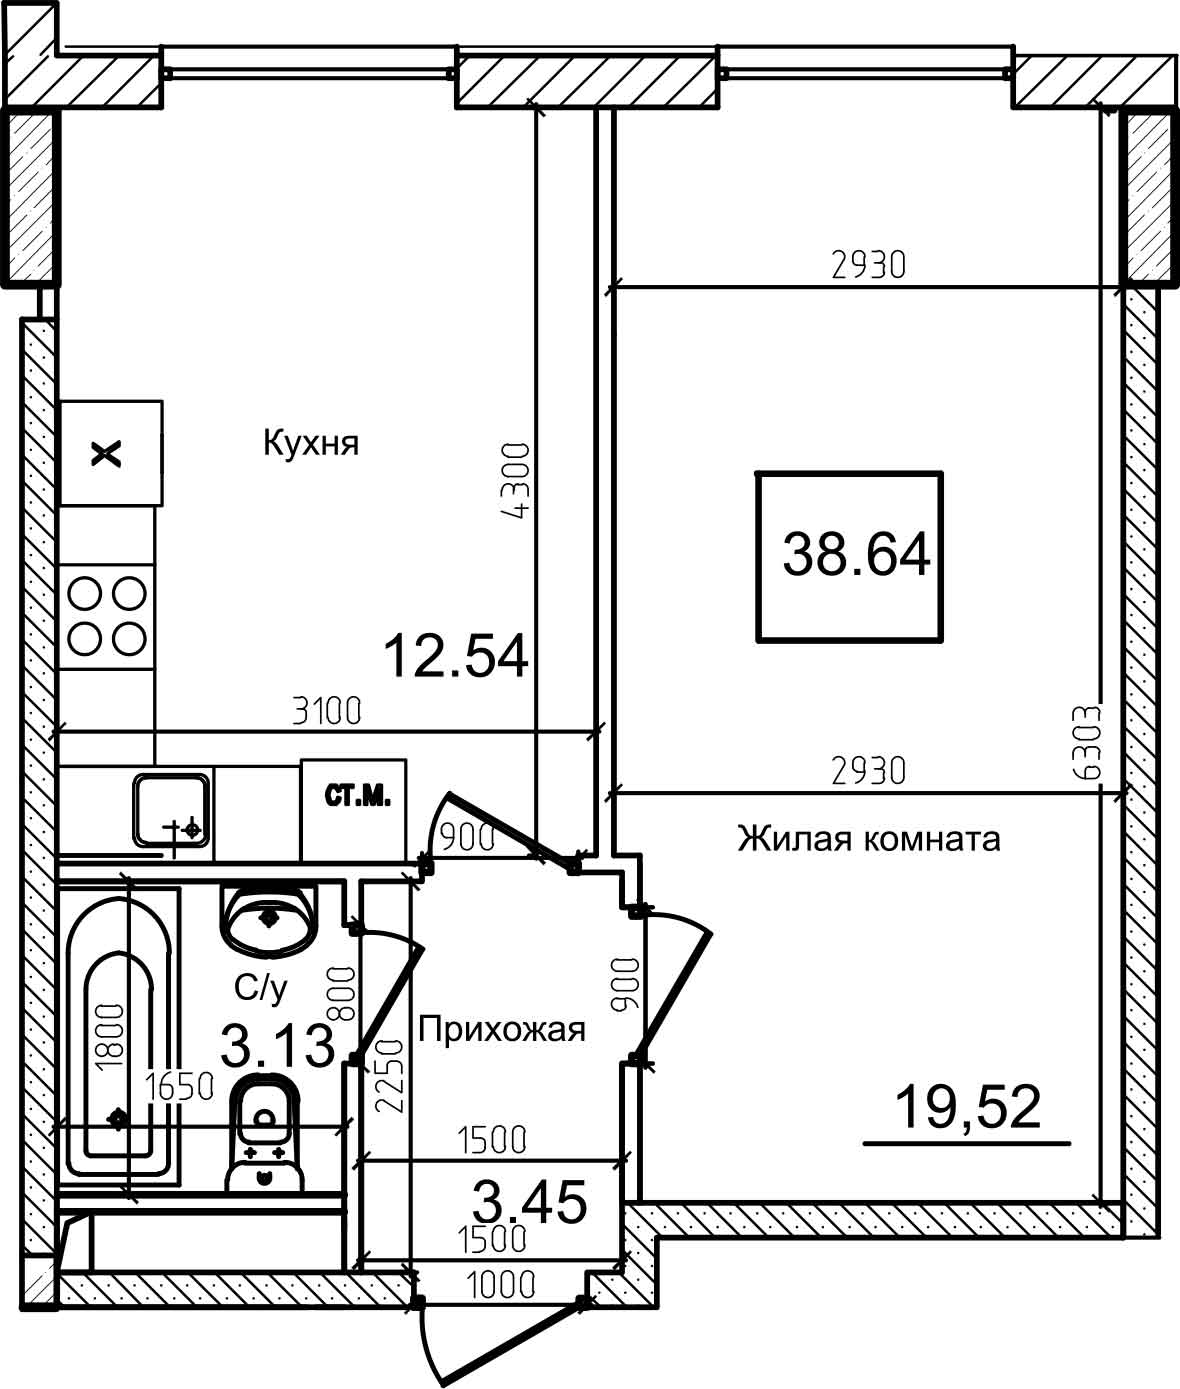 Планування 1-к квартира площею 38.3м2, AB-08-04/00009.